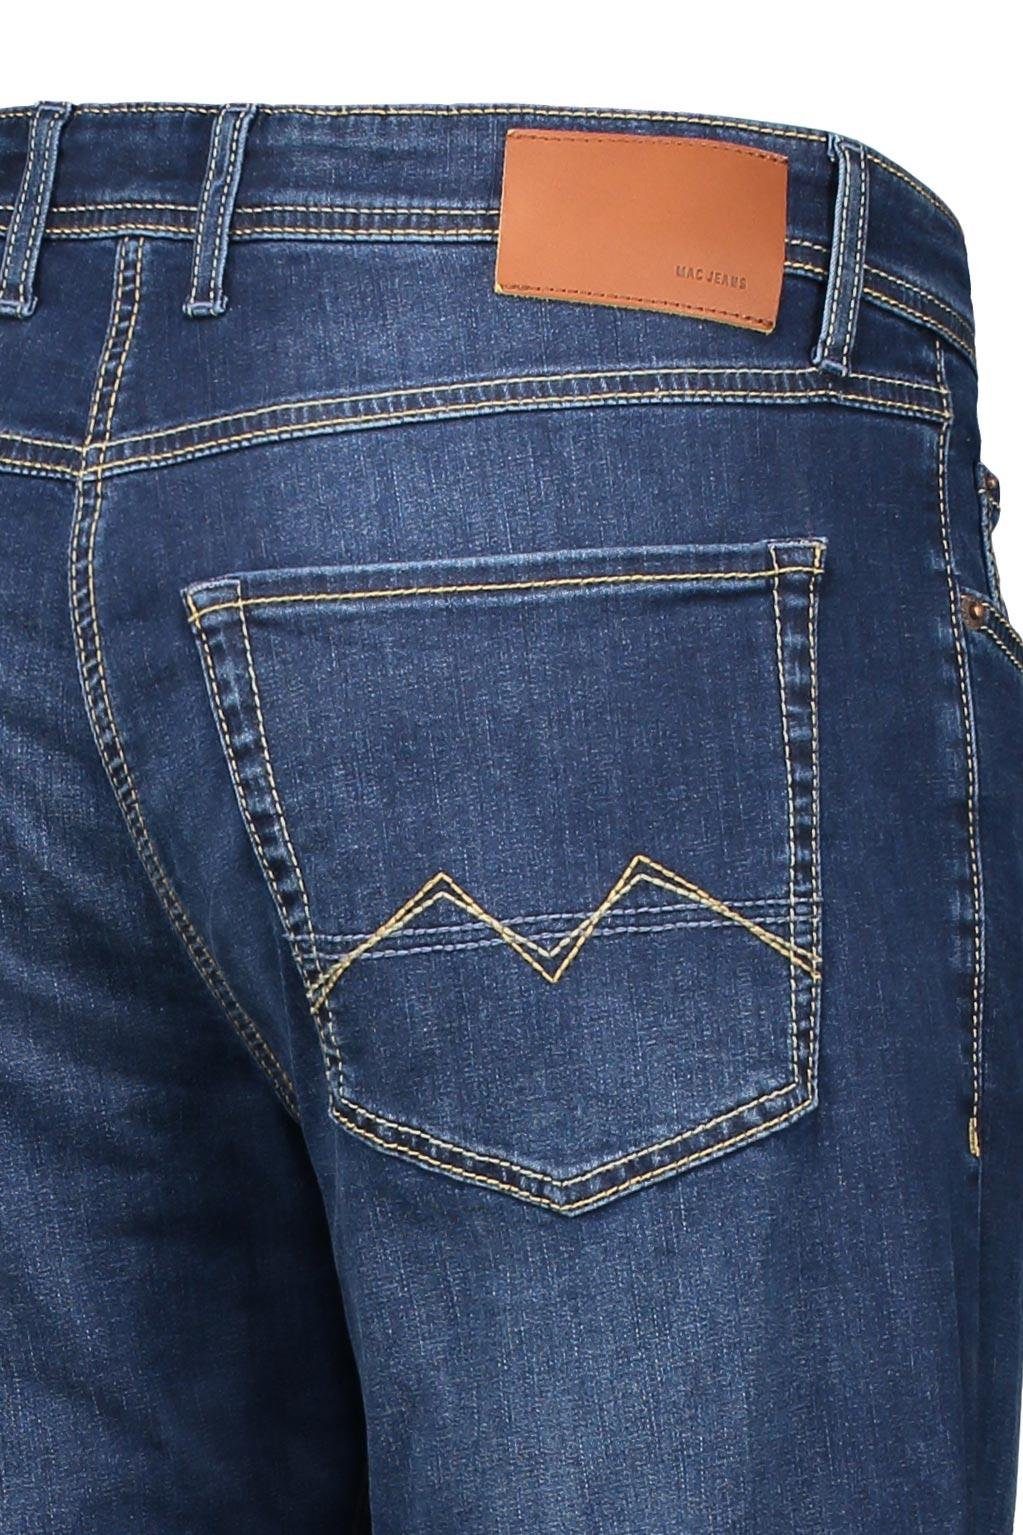 H629 dark 5-Pocket-Jeans ARNE wash 0501-00-1792 MAC authentic indigo MAC